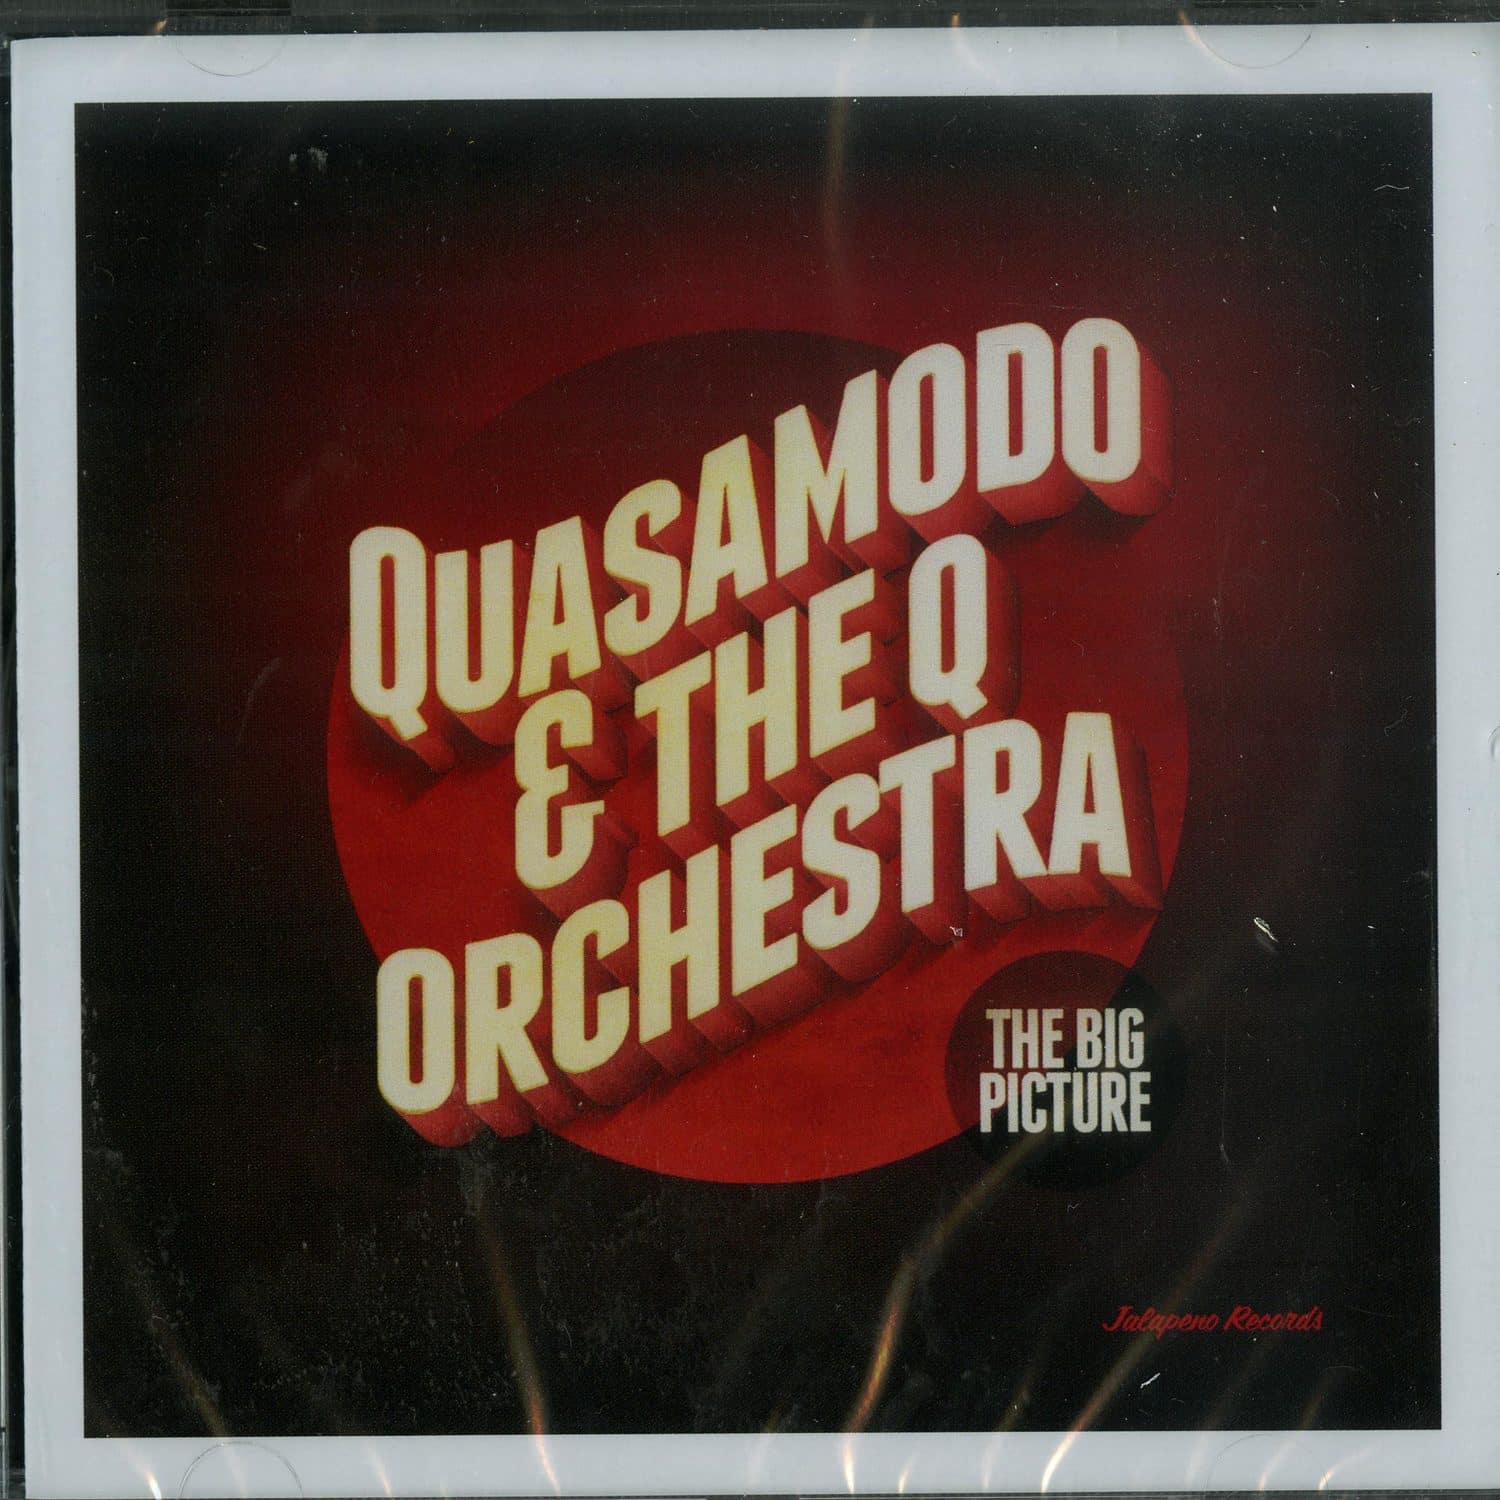 Quasamodo & The Q Orchestra - THE BIG PICTURE 